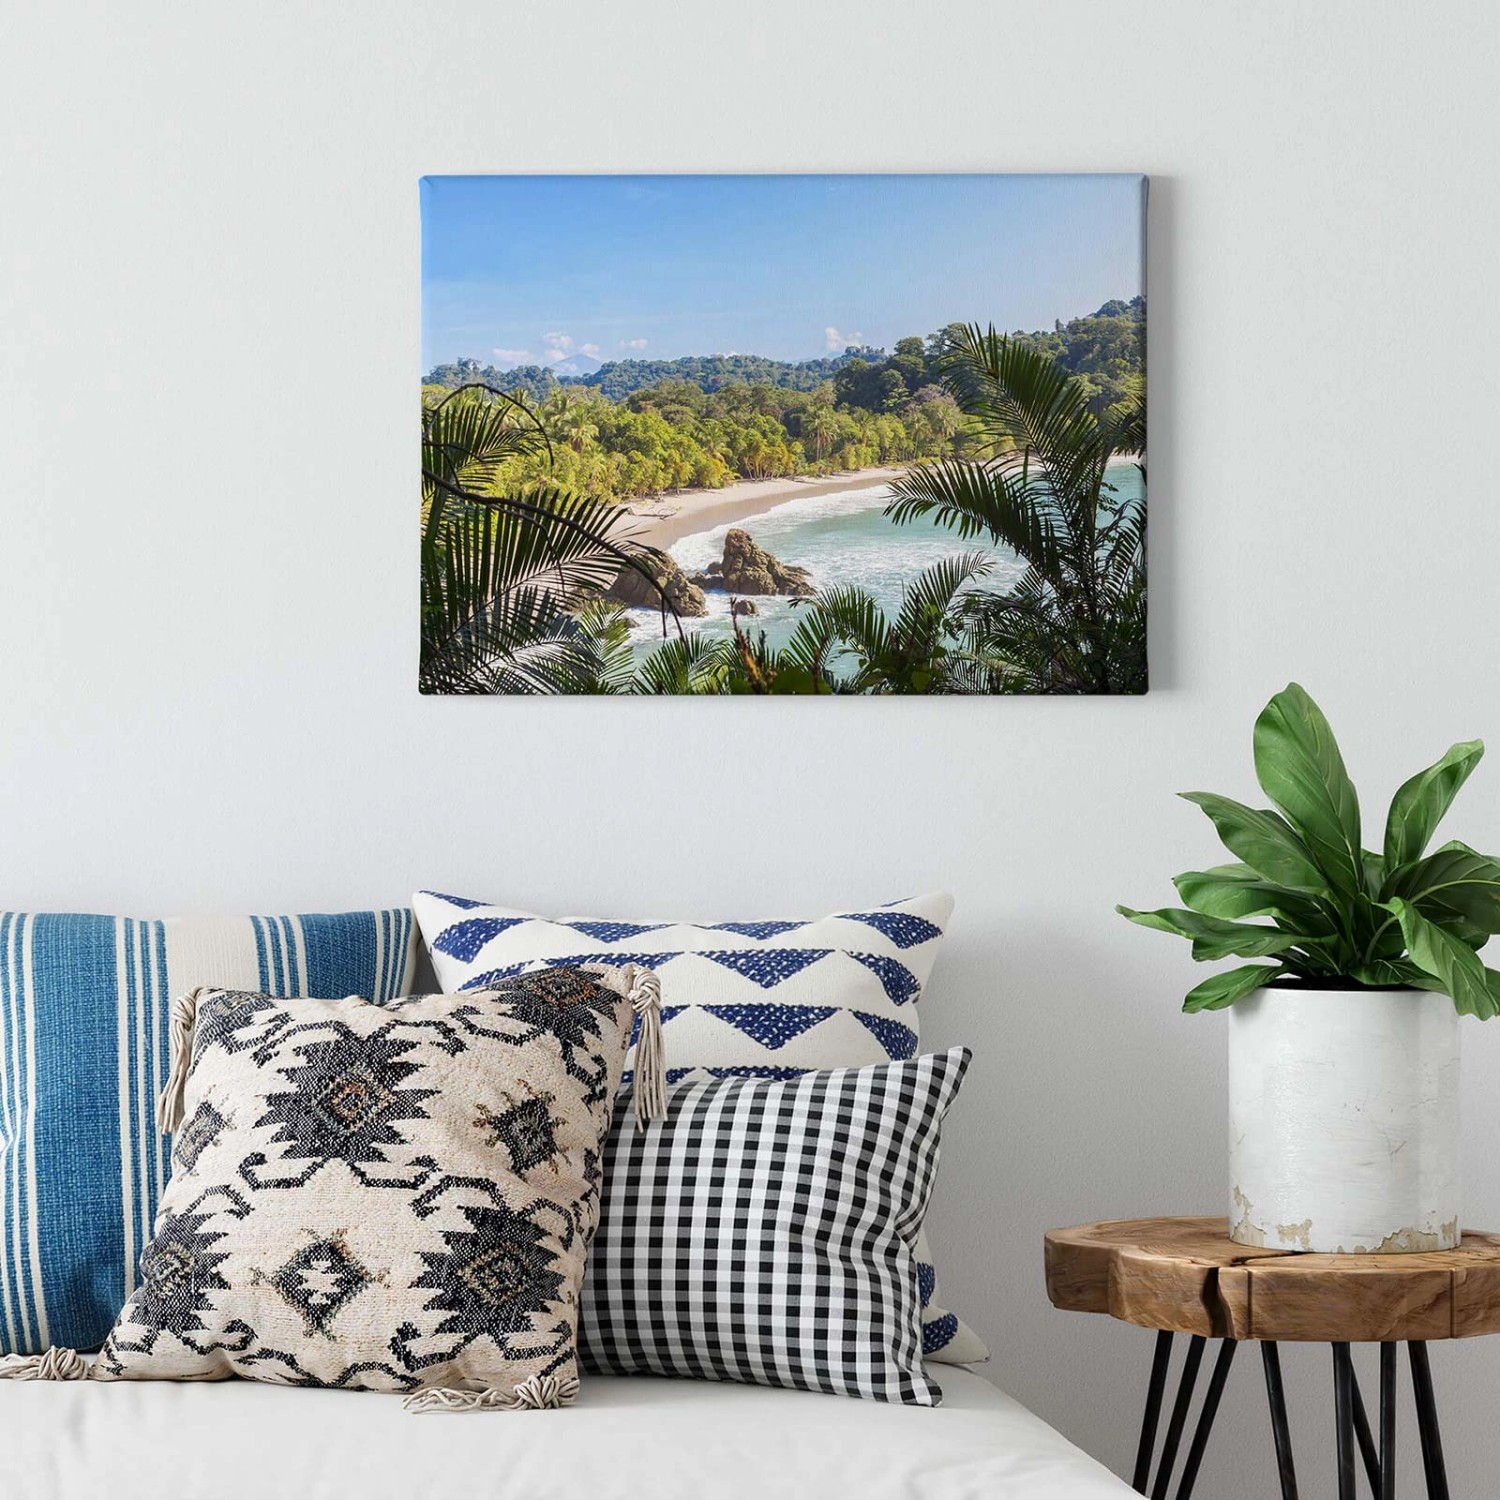 Bricoflor Leinwand Bild Mit Sandstrand Und Palmen Landschaft Wandbild Mit Strand Und Meer Für Badezimmer Und Schlafzimme